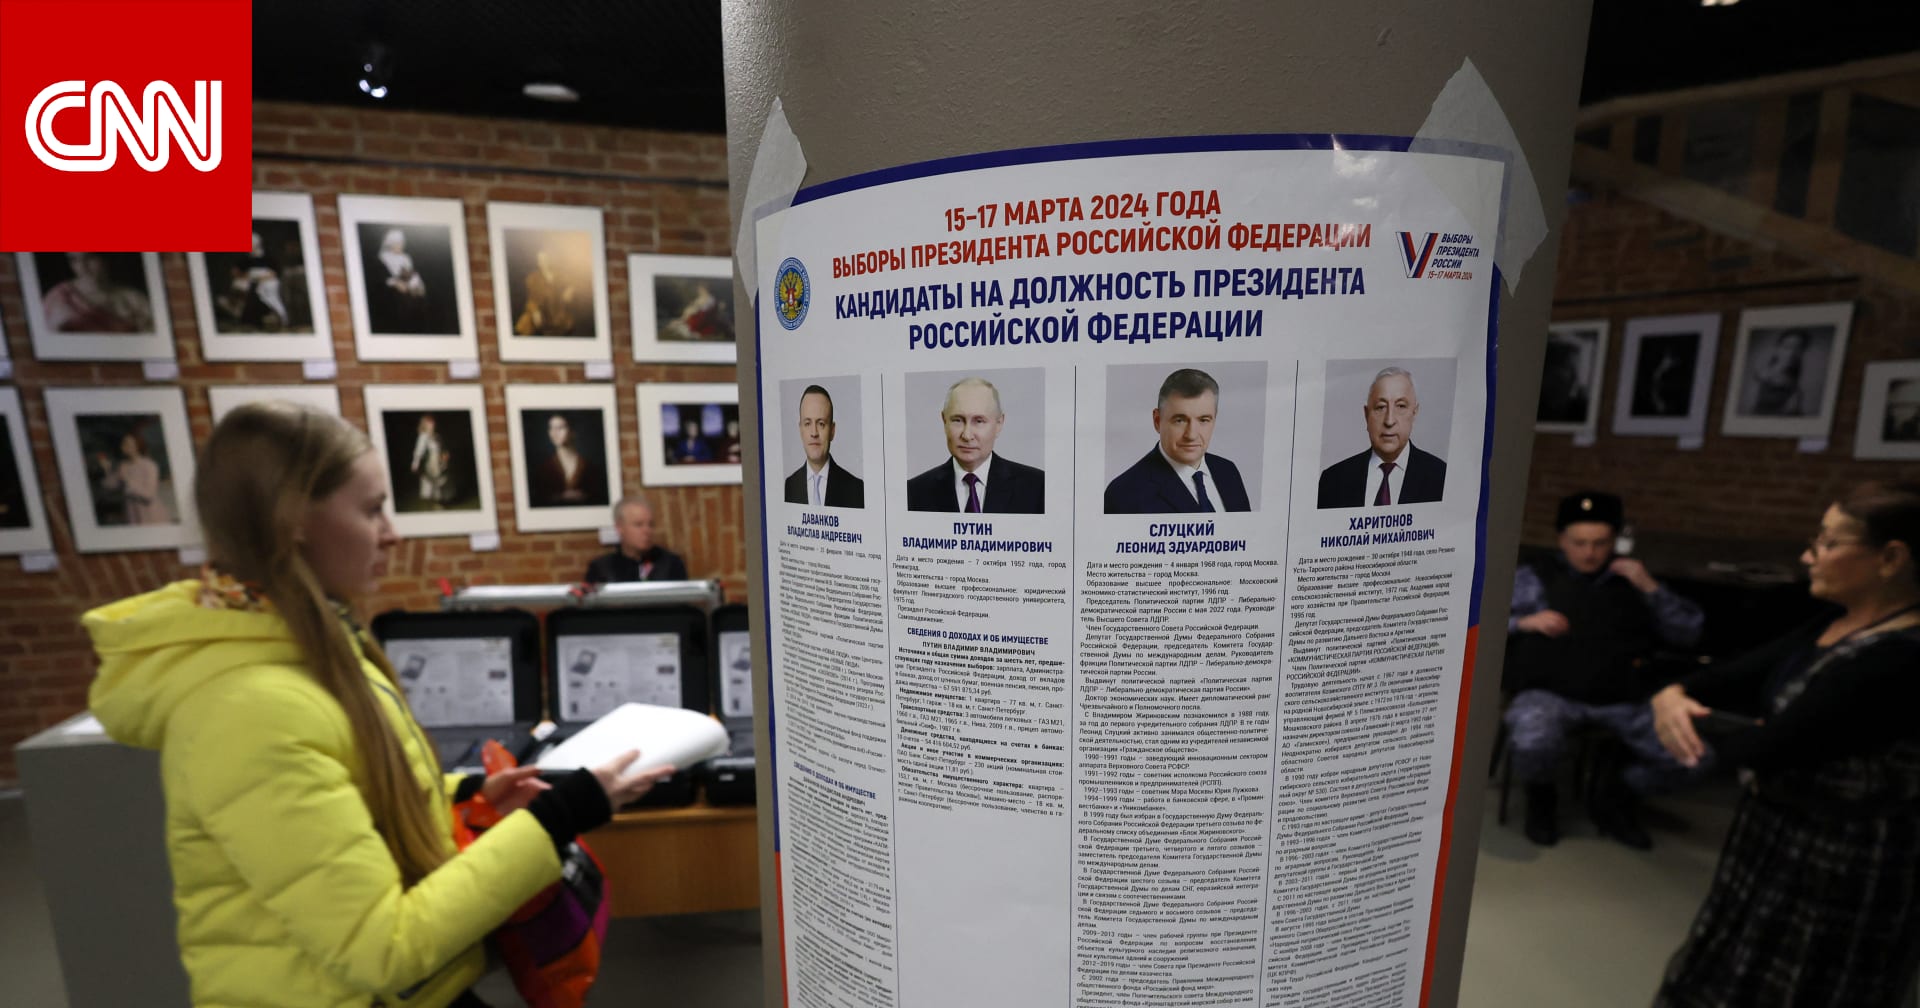 ماذا قالت أمريكا عن إجراء انتخابات "حرة ونزيهة" في روسيا؟